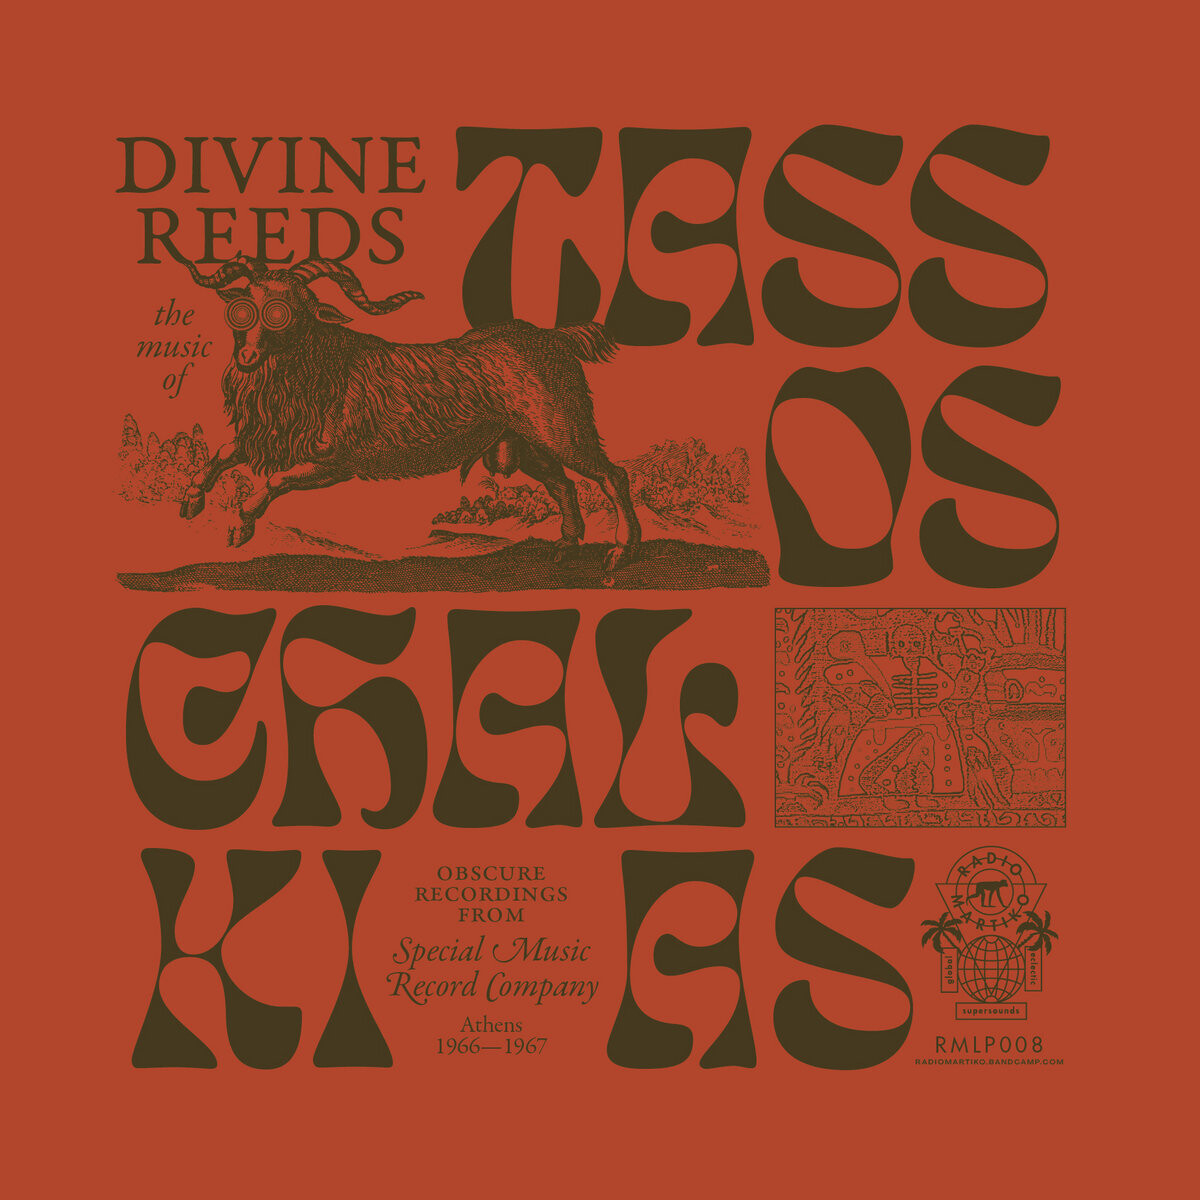 Tassos Chalkias "Divine Reeds"